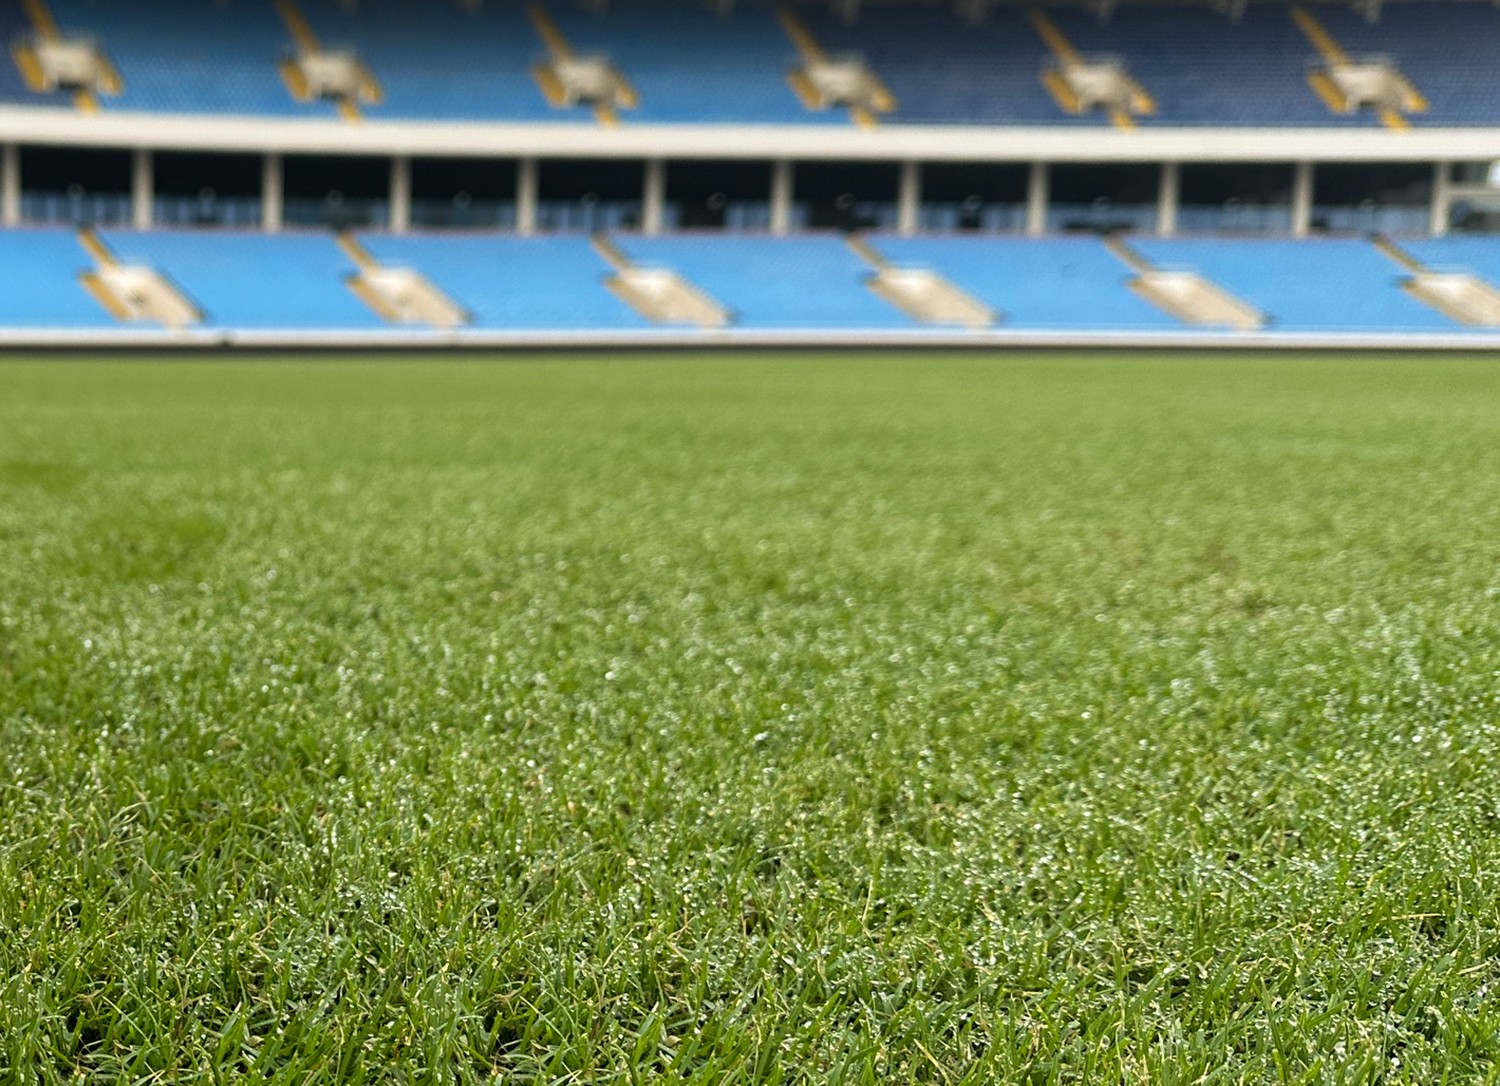 Theo yêu cầu của FIFA và AFC, mặt cỏ phải được cắt sâu, chỉ cao khoảng 1,5 cm.